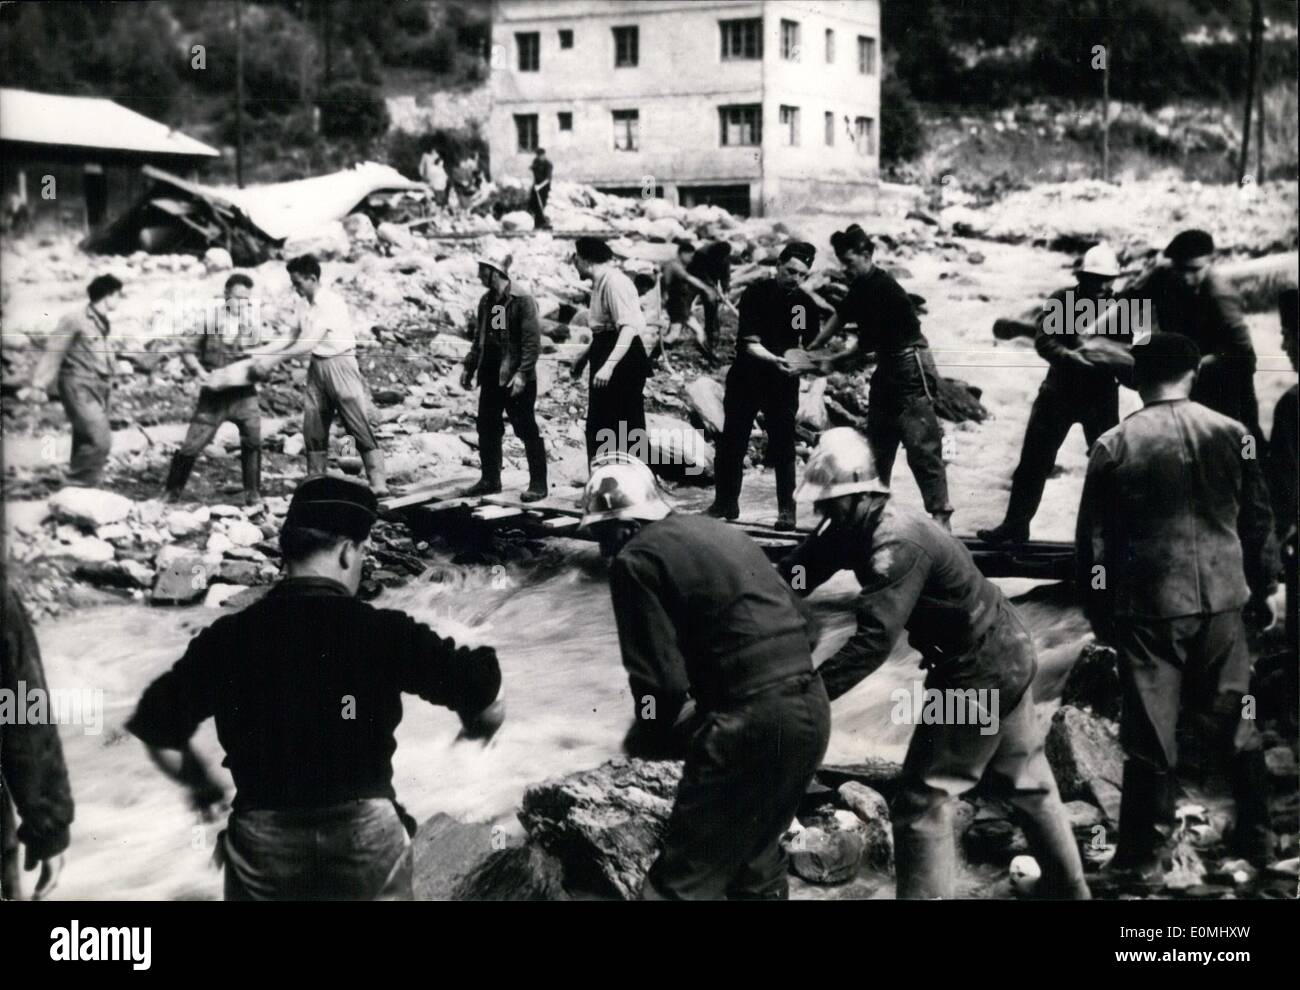 6. Juni 1955 - verursacht schwere Regenfälle Überschwemmungen und Erdrutsche auf Französisch-italienischen Grenze: Unterstützt von Truppen sind Feuerwehrleute gesehen Reinigung das Gesindel In den Straßen von Modane an der Französisch-italienischen Grenze. Das Hochwasser wurde durch starke Regenfälle und der Überlauf des Bogens Fluss verursacht. Stockfoto